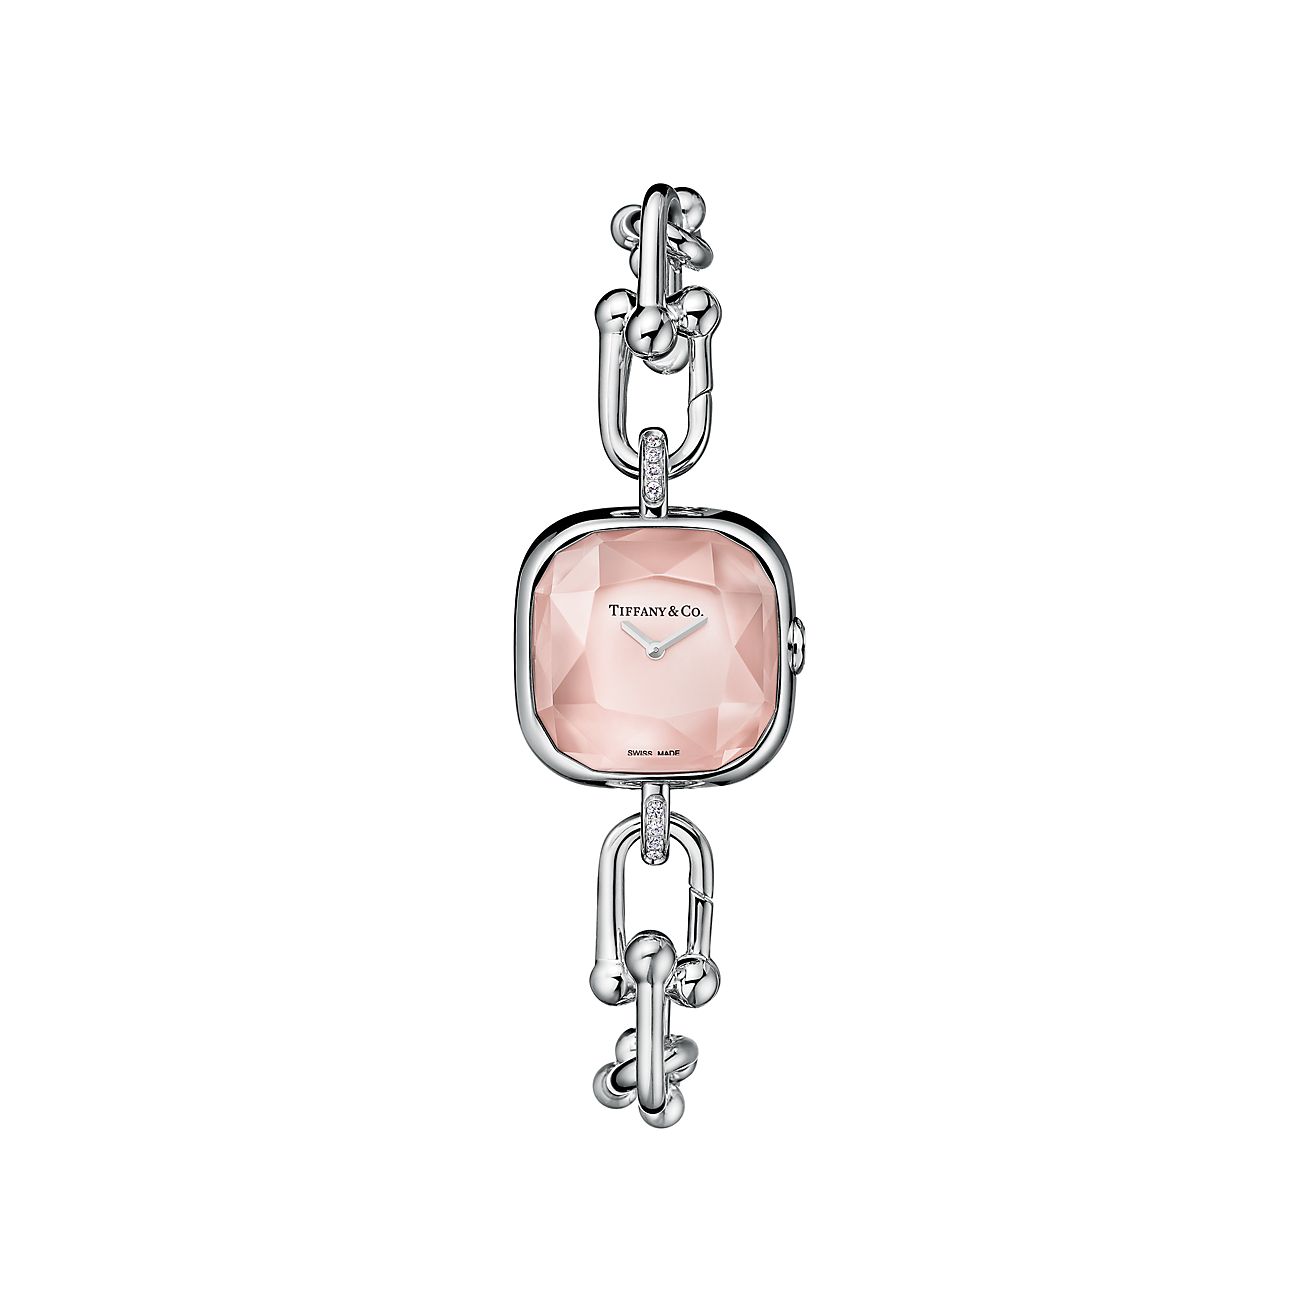 ティファニー ハードウェア ウォッチ ダイヤモンド ピンク マザーオブパール スターリングシルバー | Tiffany & Co.